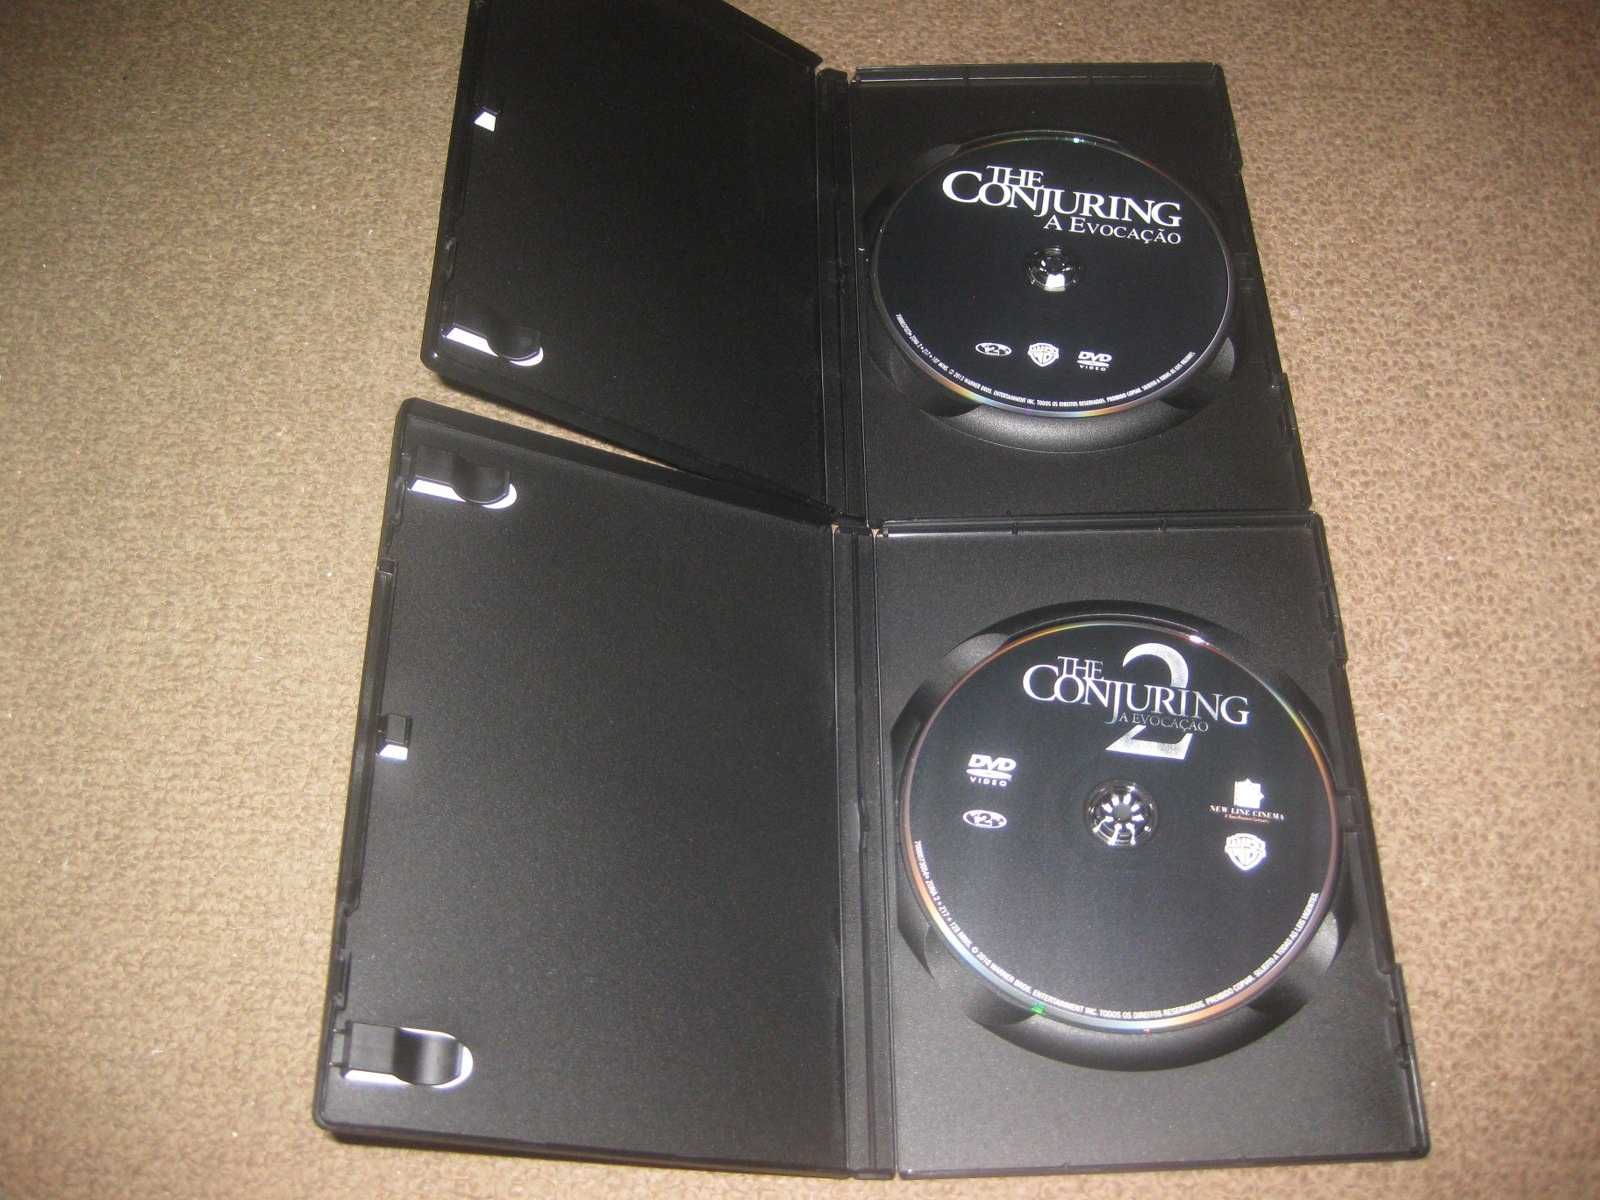 Colecção Completa em DVD "The Conjuring"